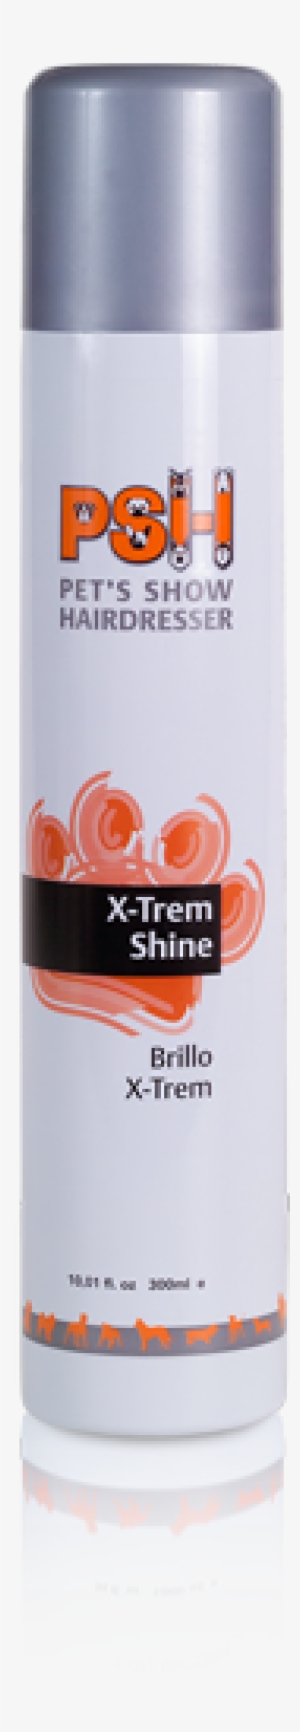 Brillo X-trem - Psh X-trem Shine Spray - 300 Ml Extreme Shine 300 Ml